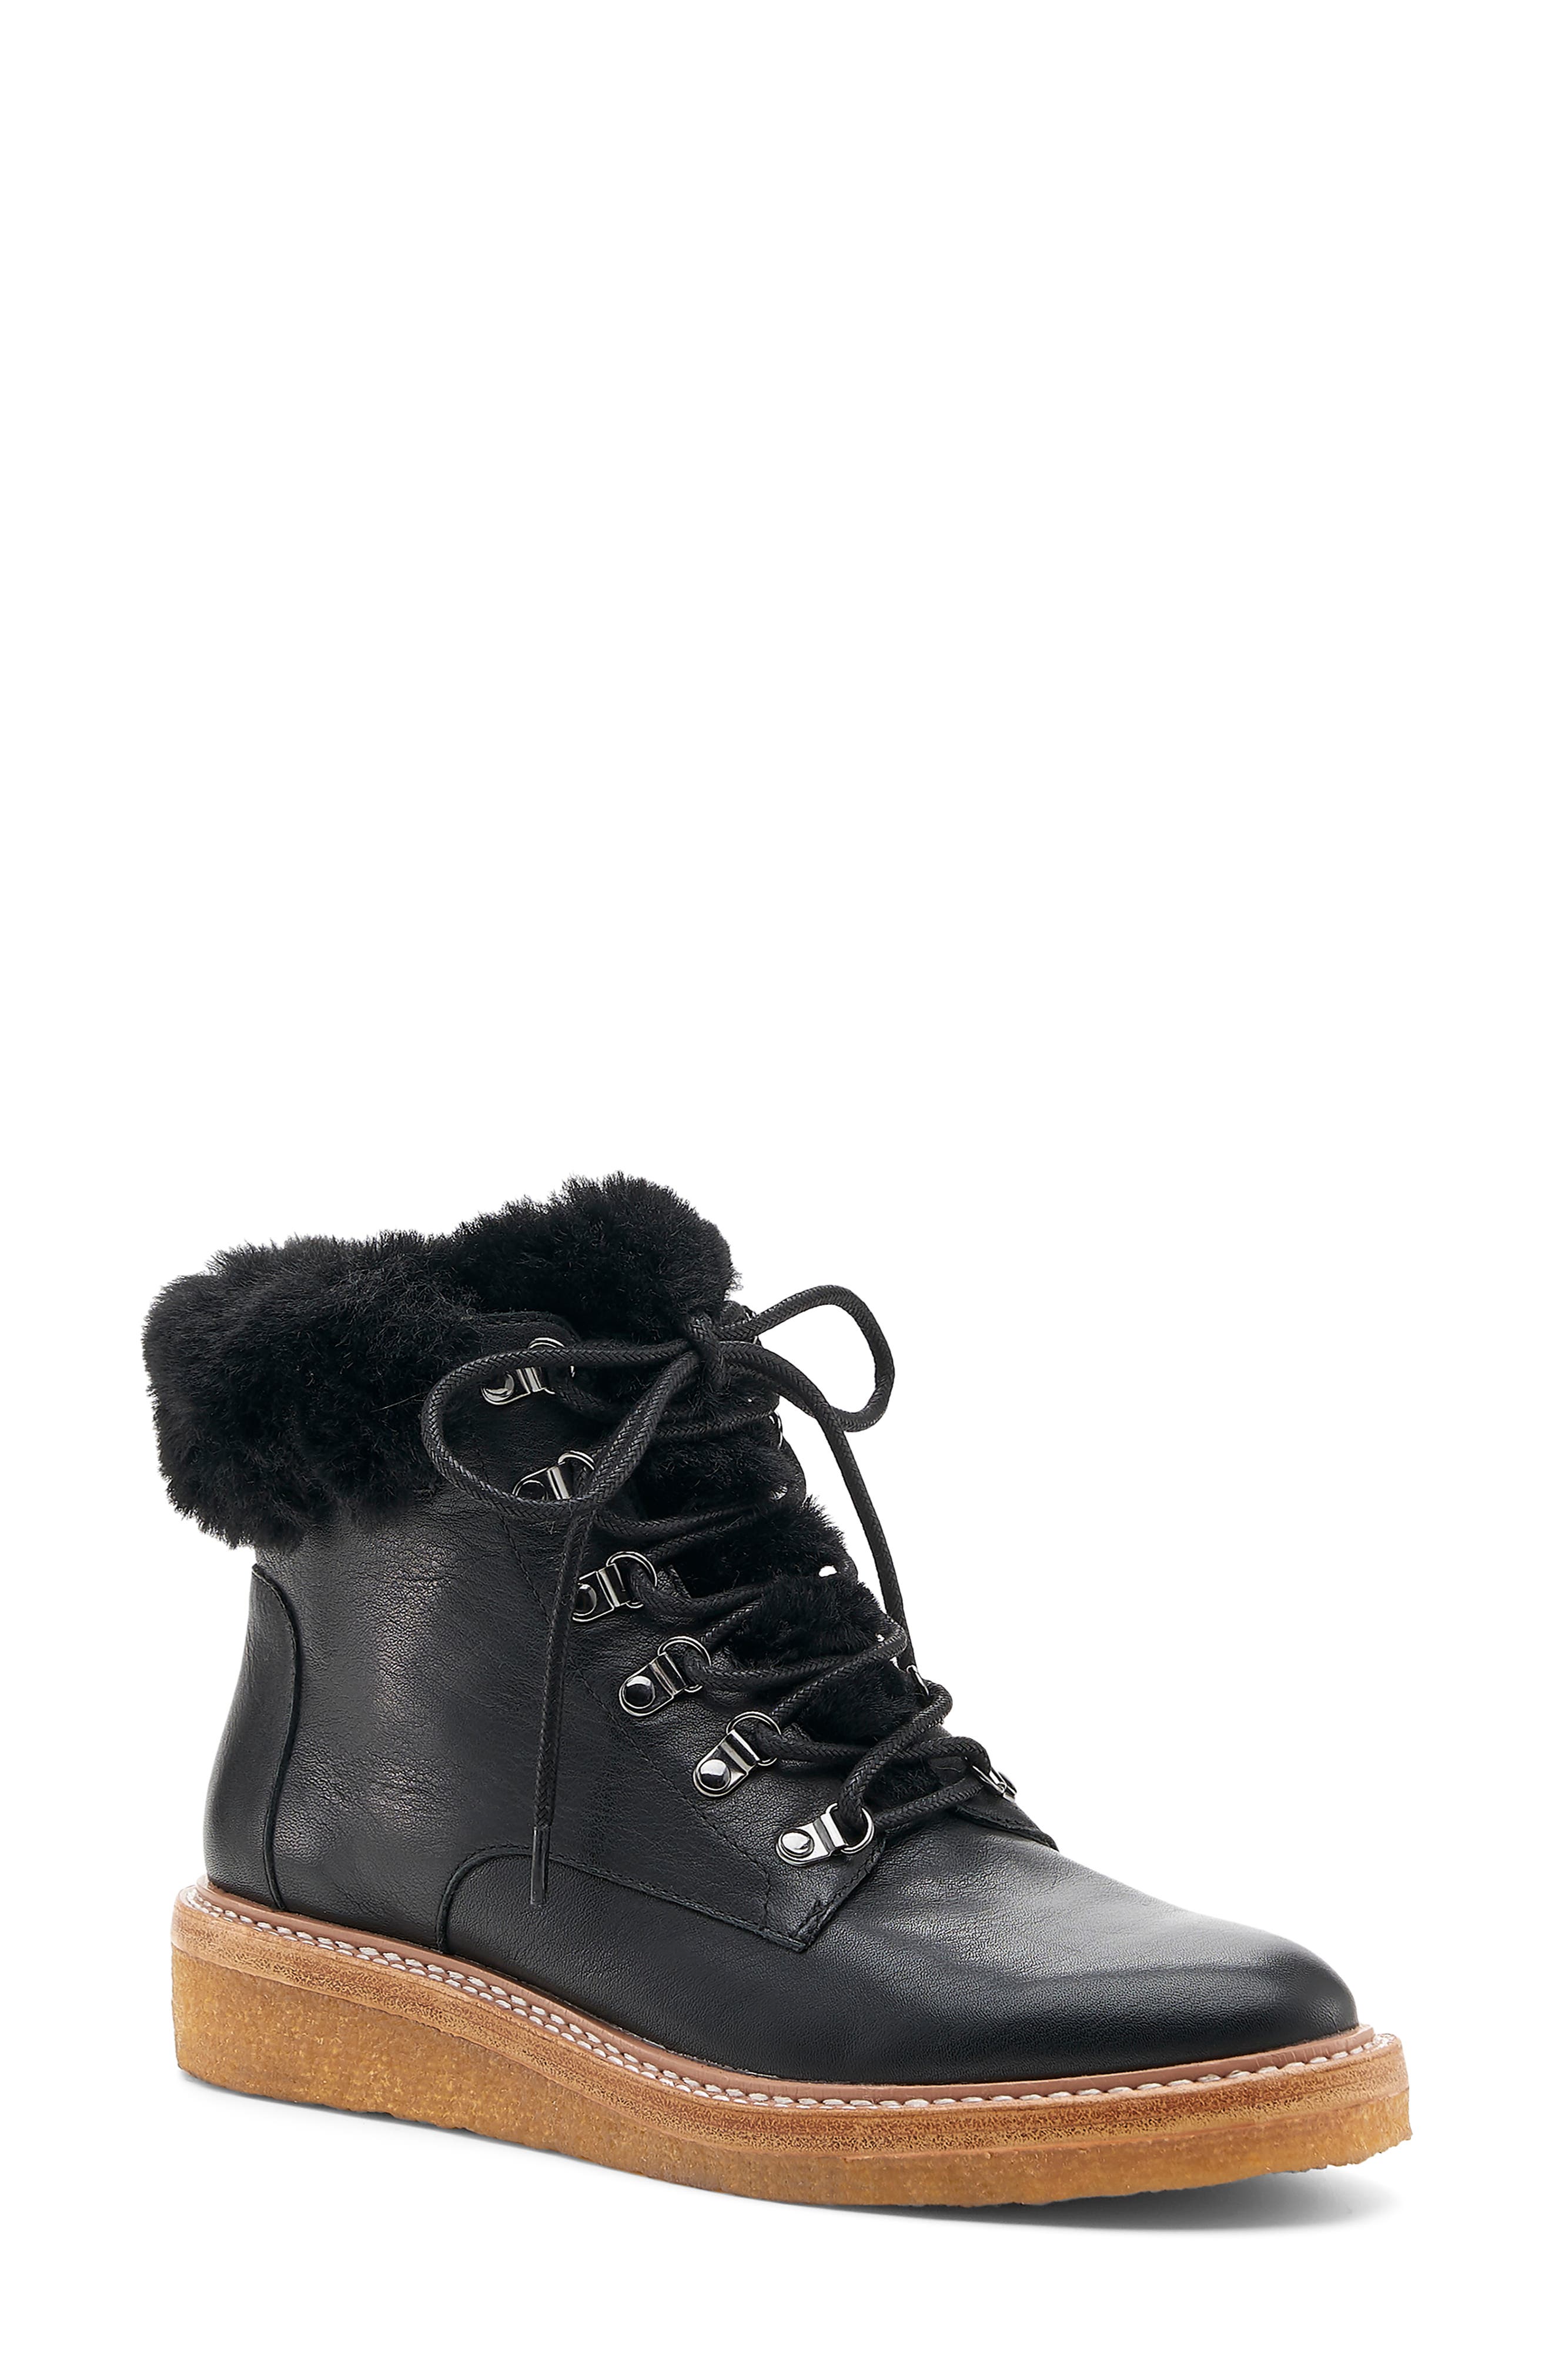 botkier winter boots